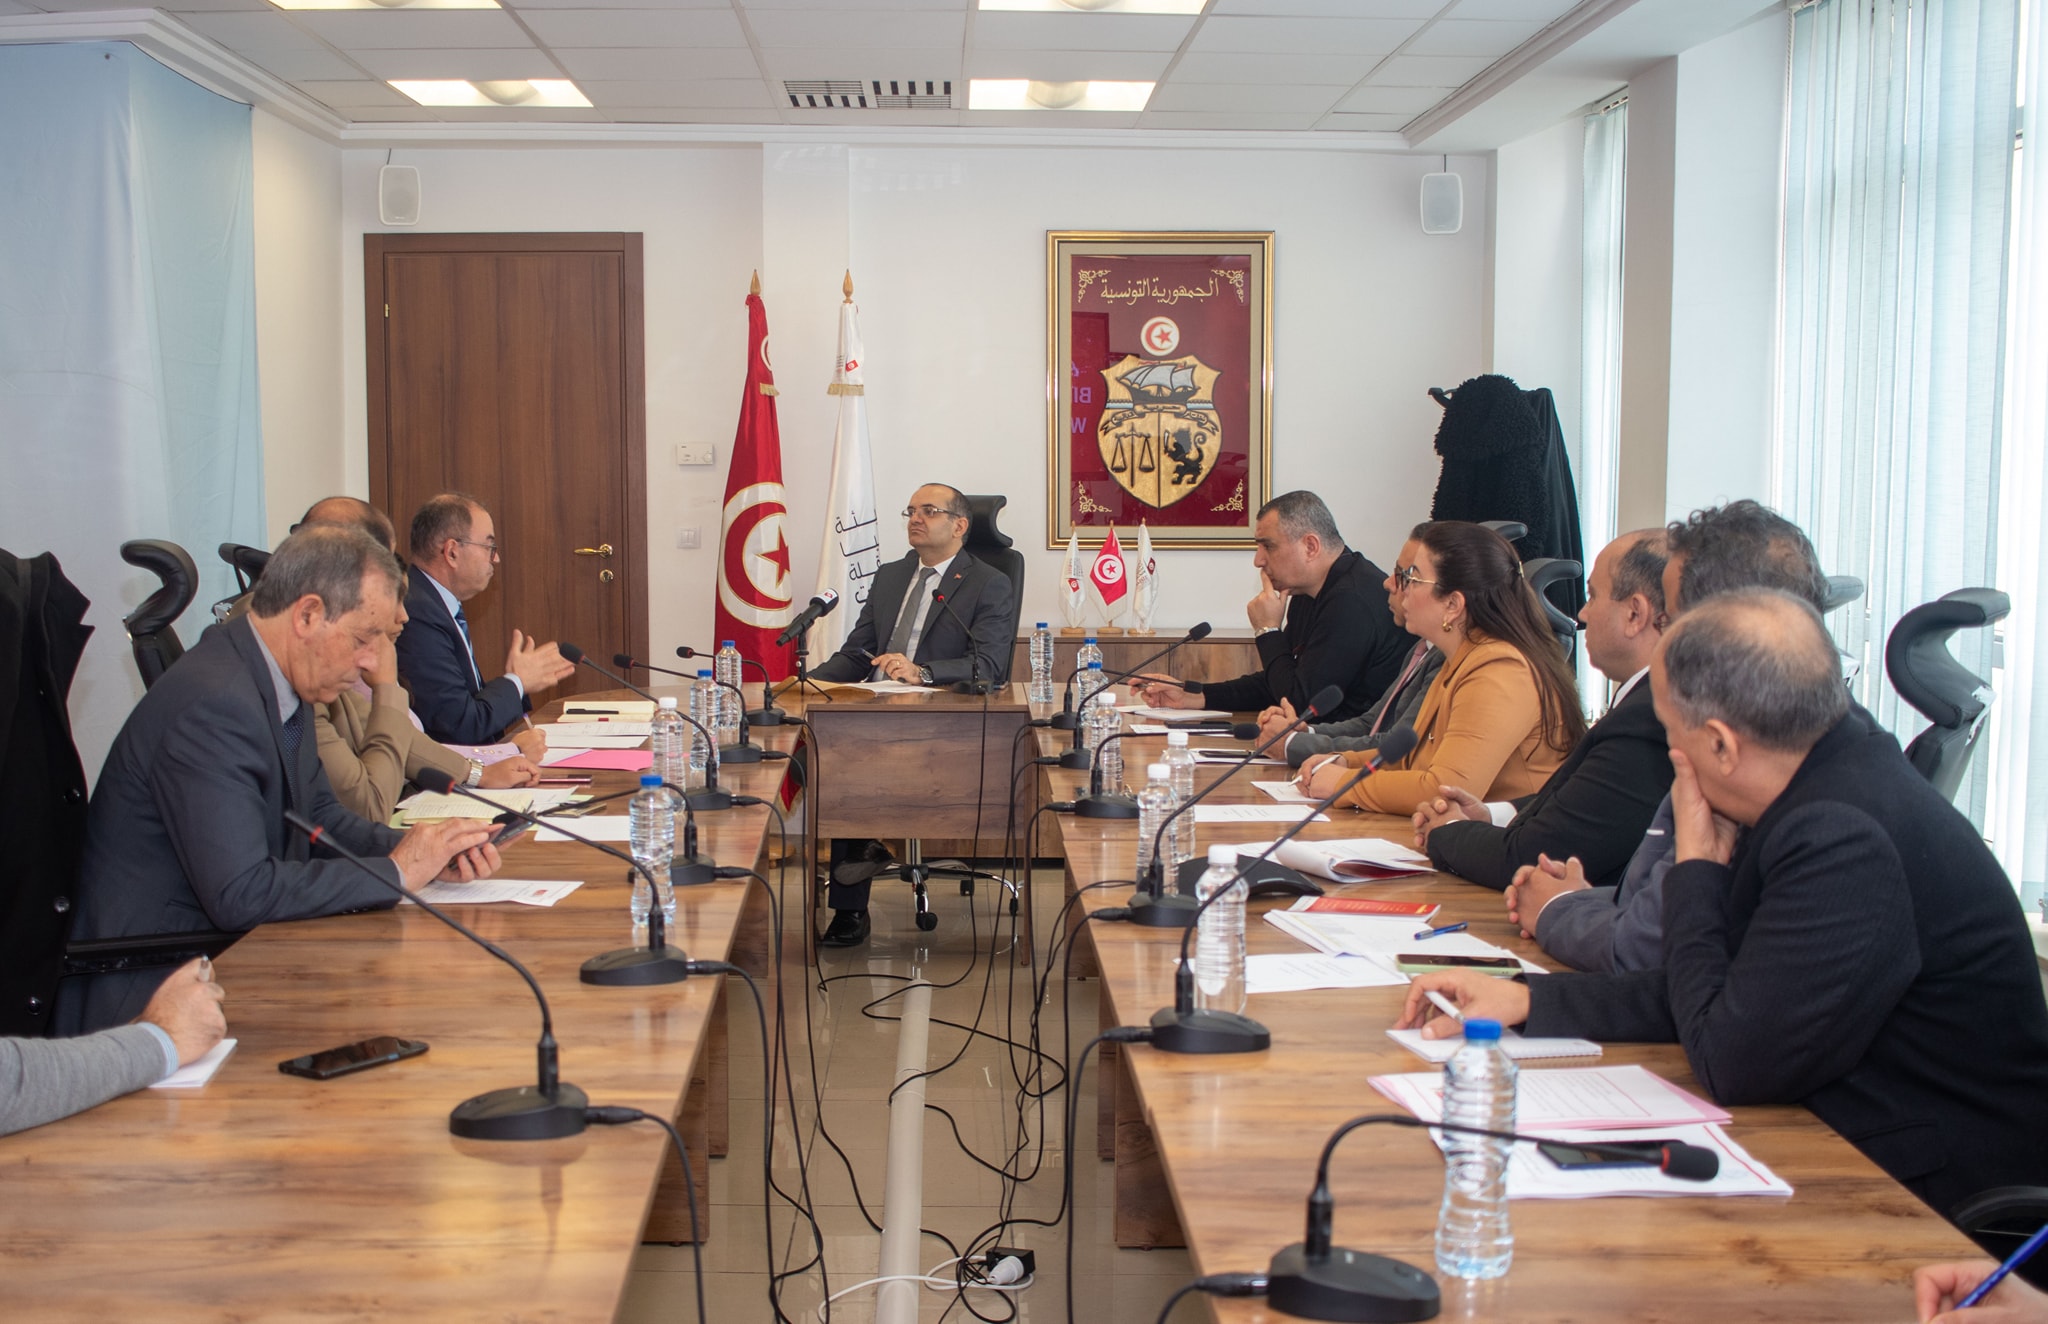   جلسة عمل بين أعضاء هيئة الانتخابات ووفد وزارة الخارجية